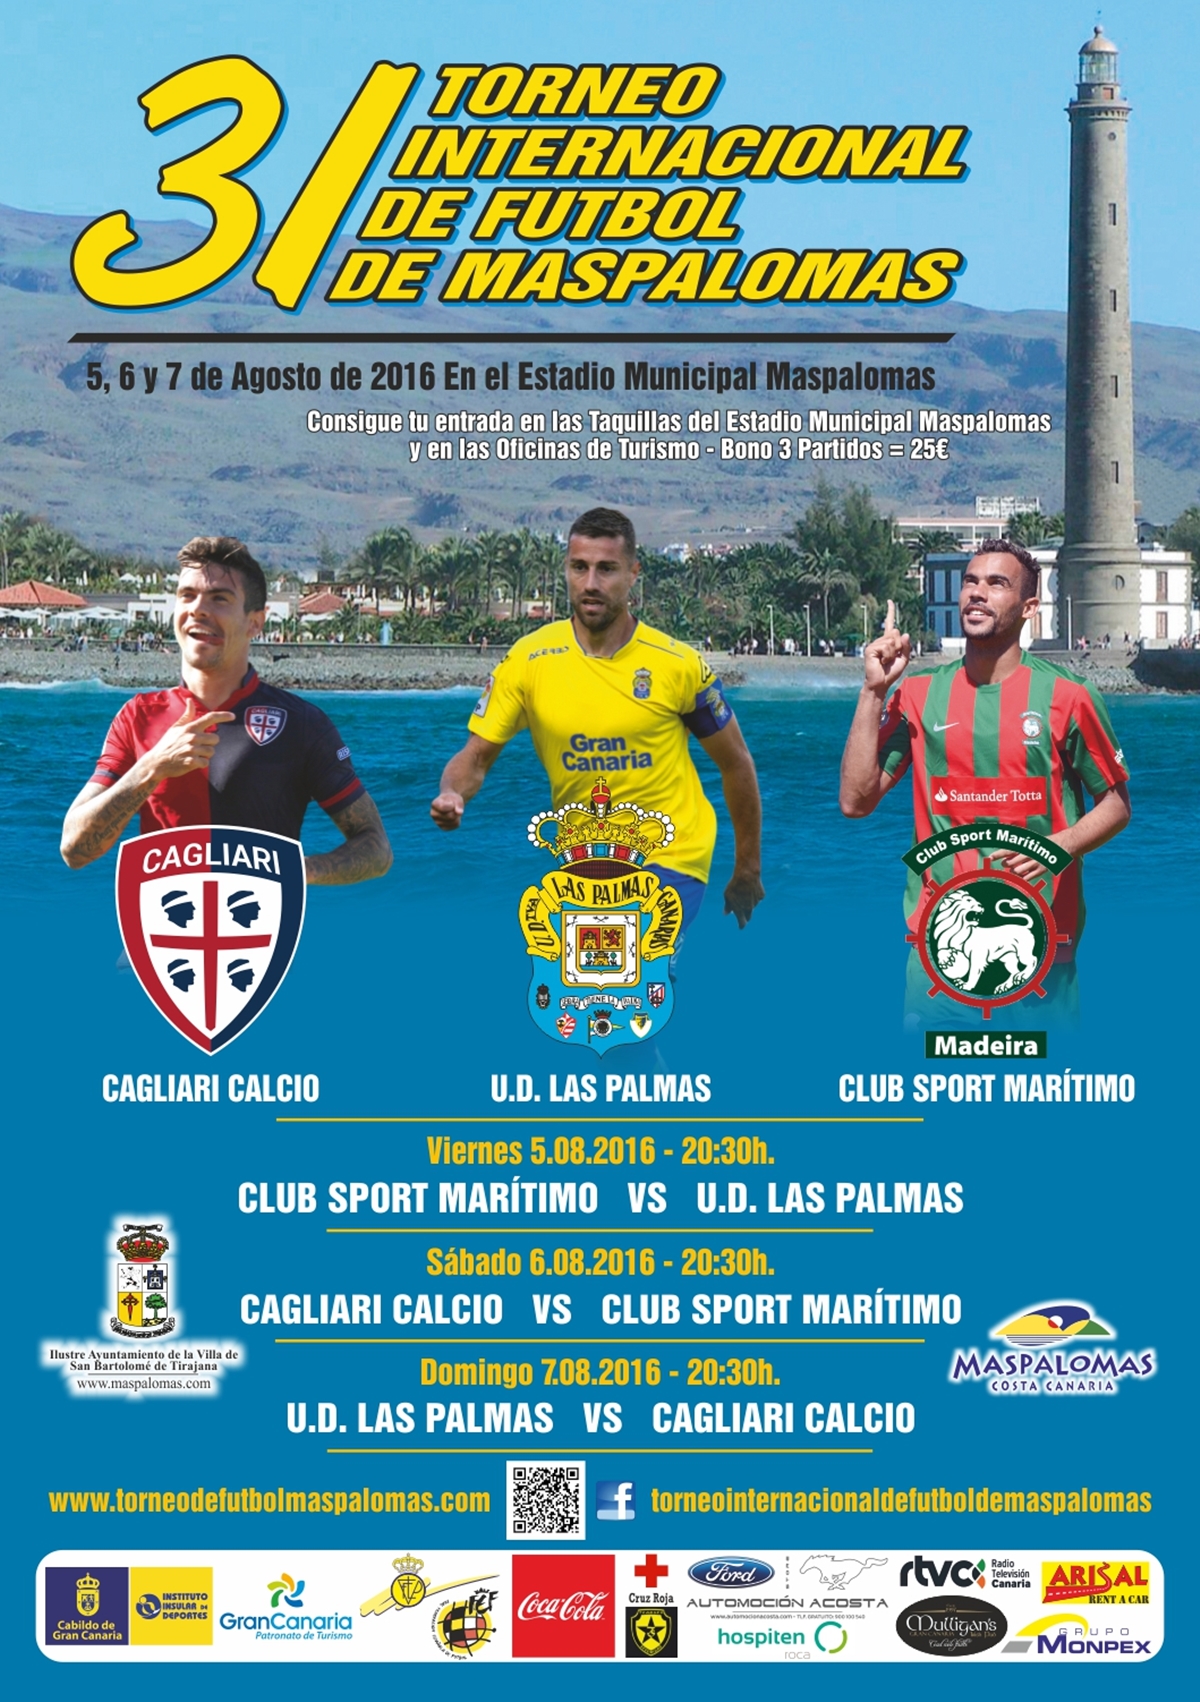 2016 TorneoInternacionalFutbolMaspalomas Cartel